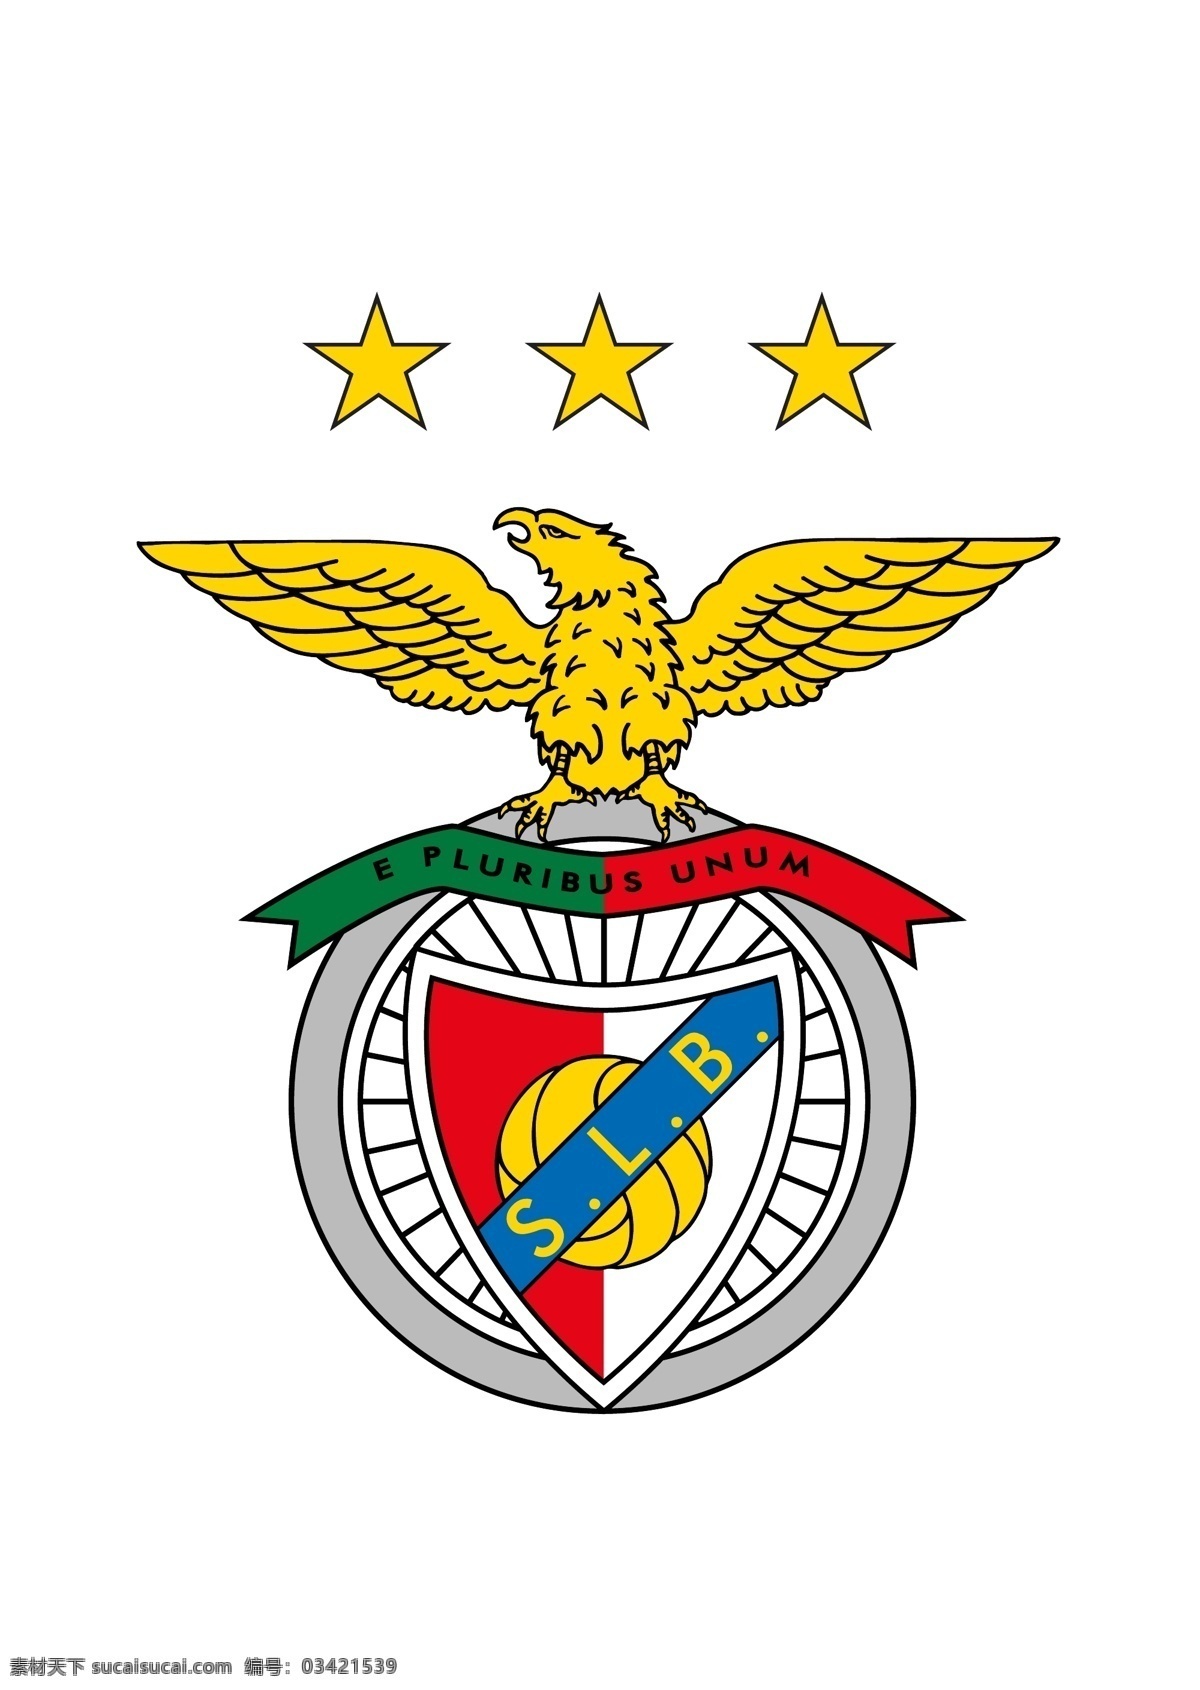 里斯本 菲卡 体育俱乐部 徽标 本菲卡 体育 葡超 葡萄牙 超级联赛 欧冠 欧联 欧洲主流联赛 logo设计